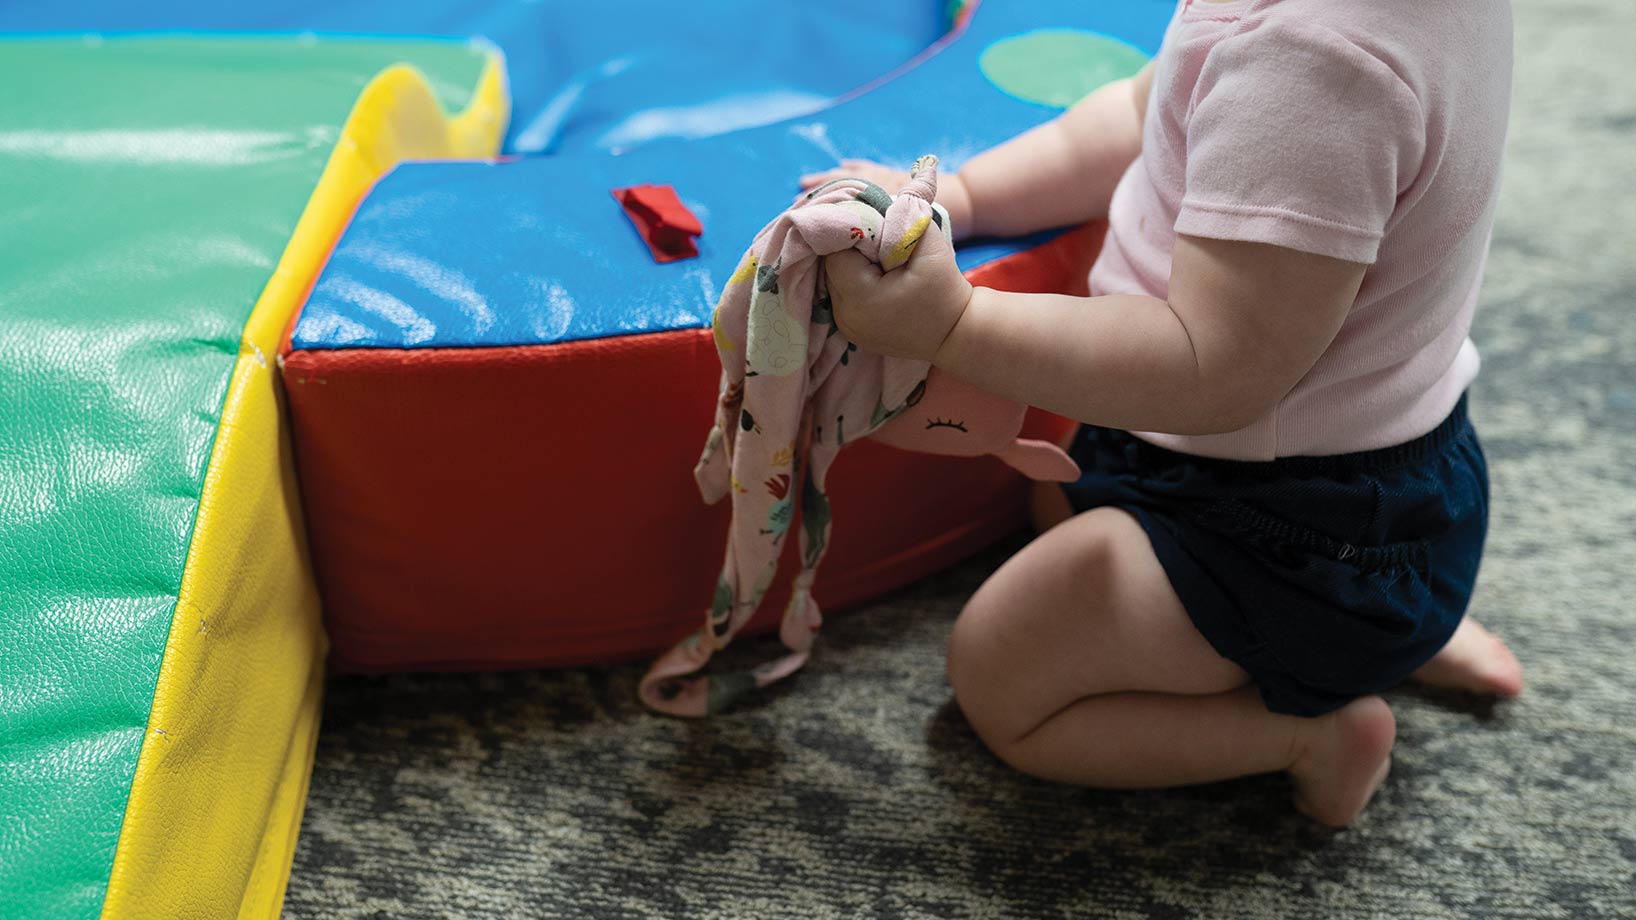 Child playing near colorful mats